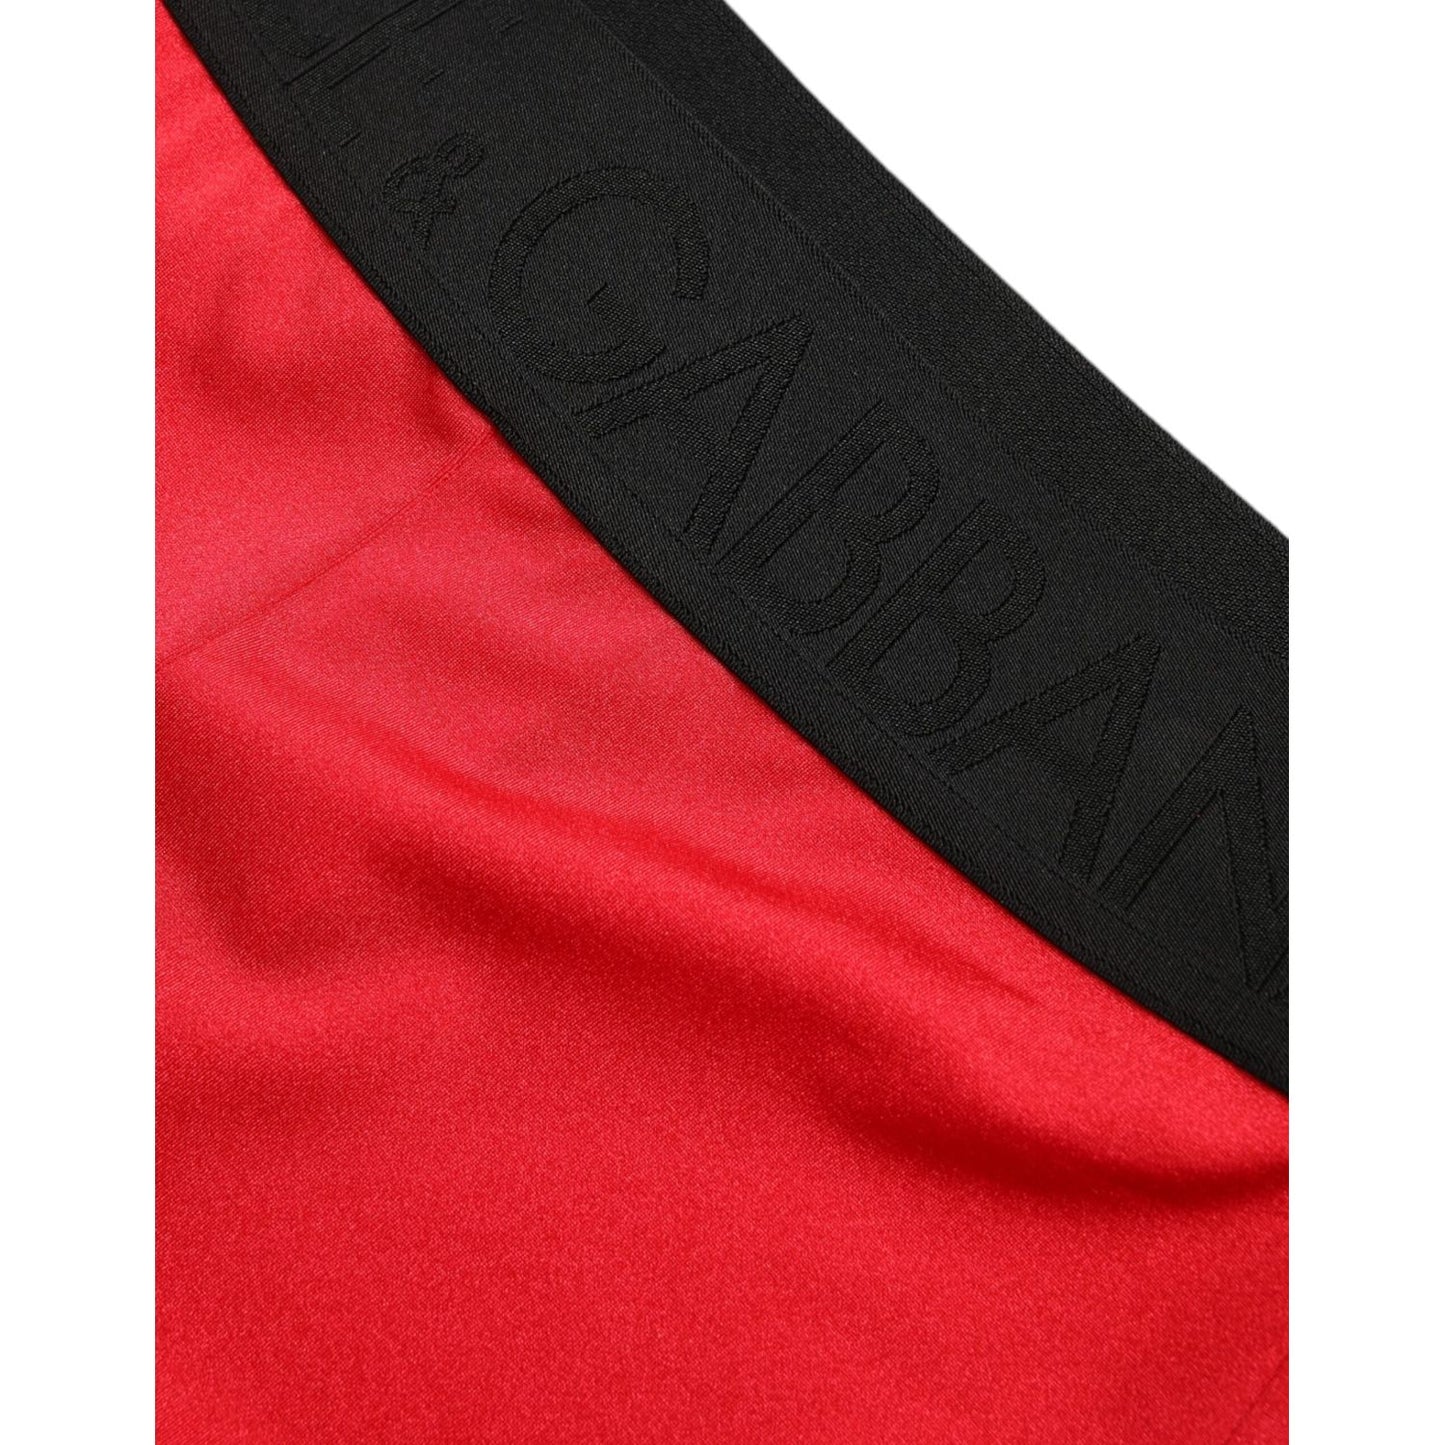 Dolce & Gabbana Elegant High Waist Red Leggings red-nylon-dg-logo-slim-leggings-pants